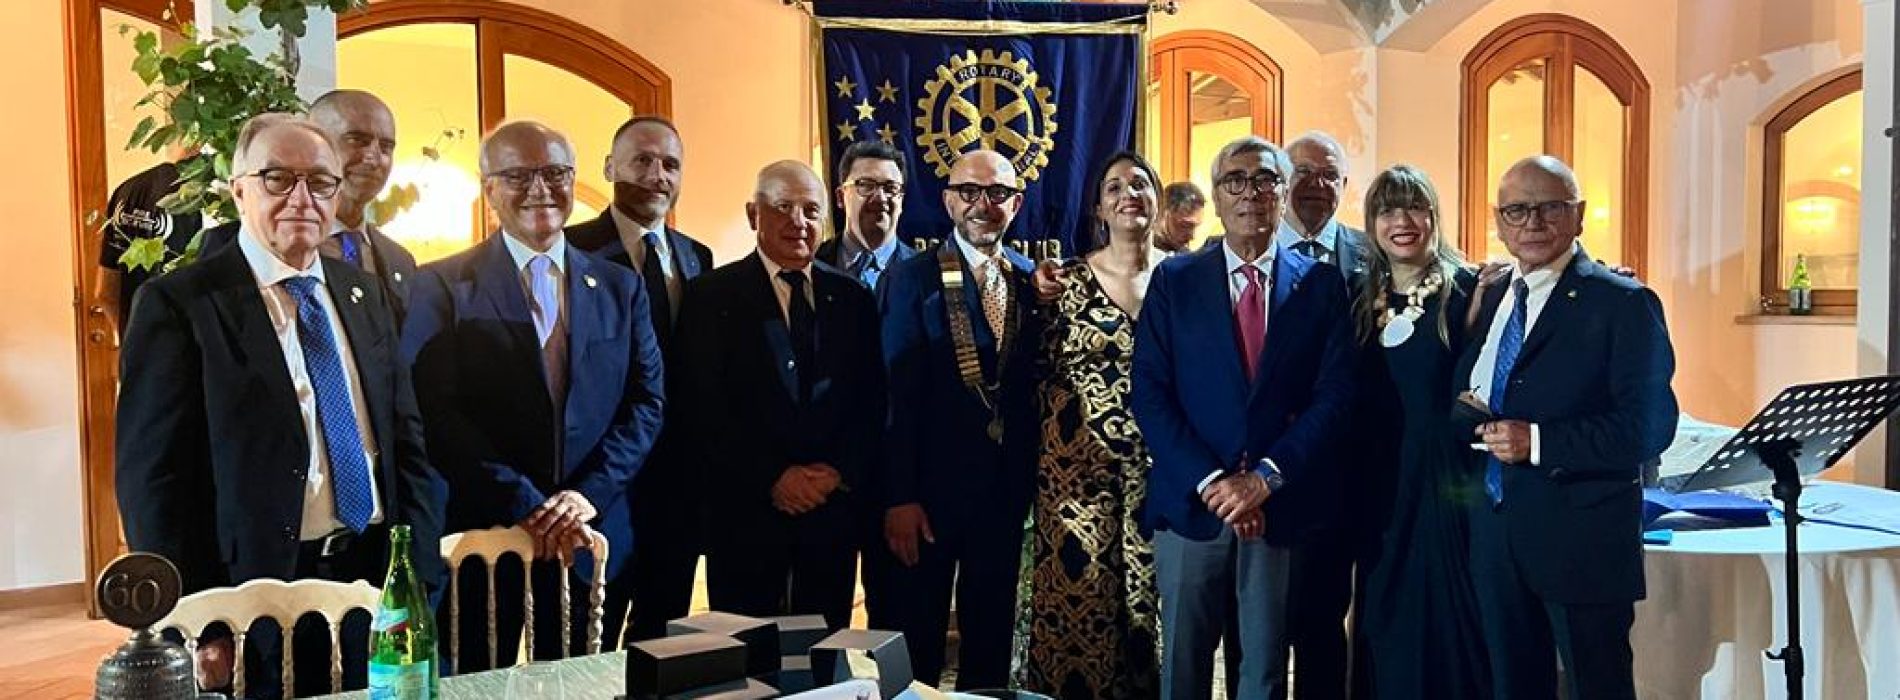 Rotary club Caserta Terra di Lavoro. Ianniello presidente